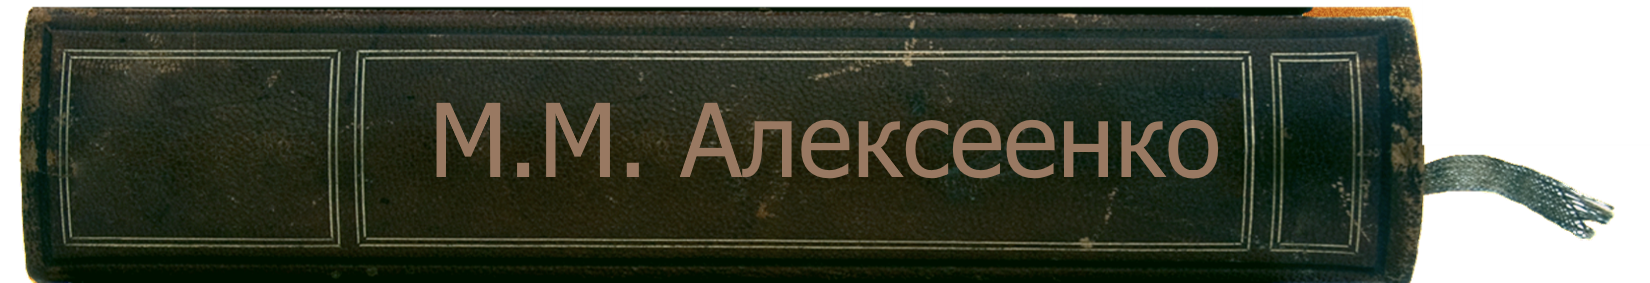 алексеенко.png